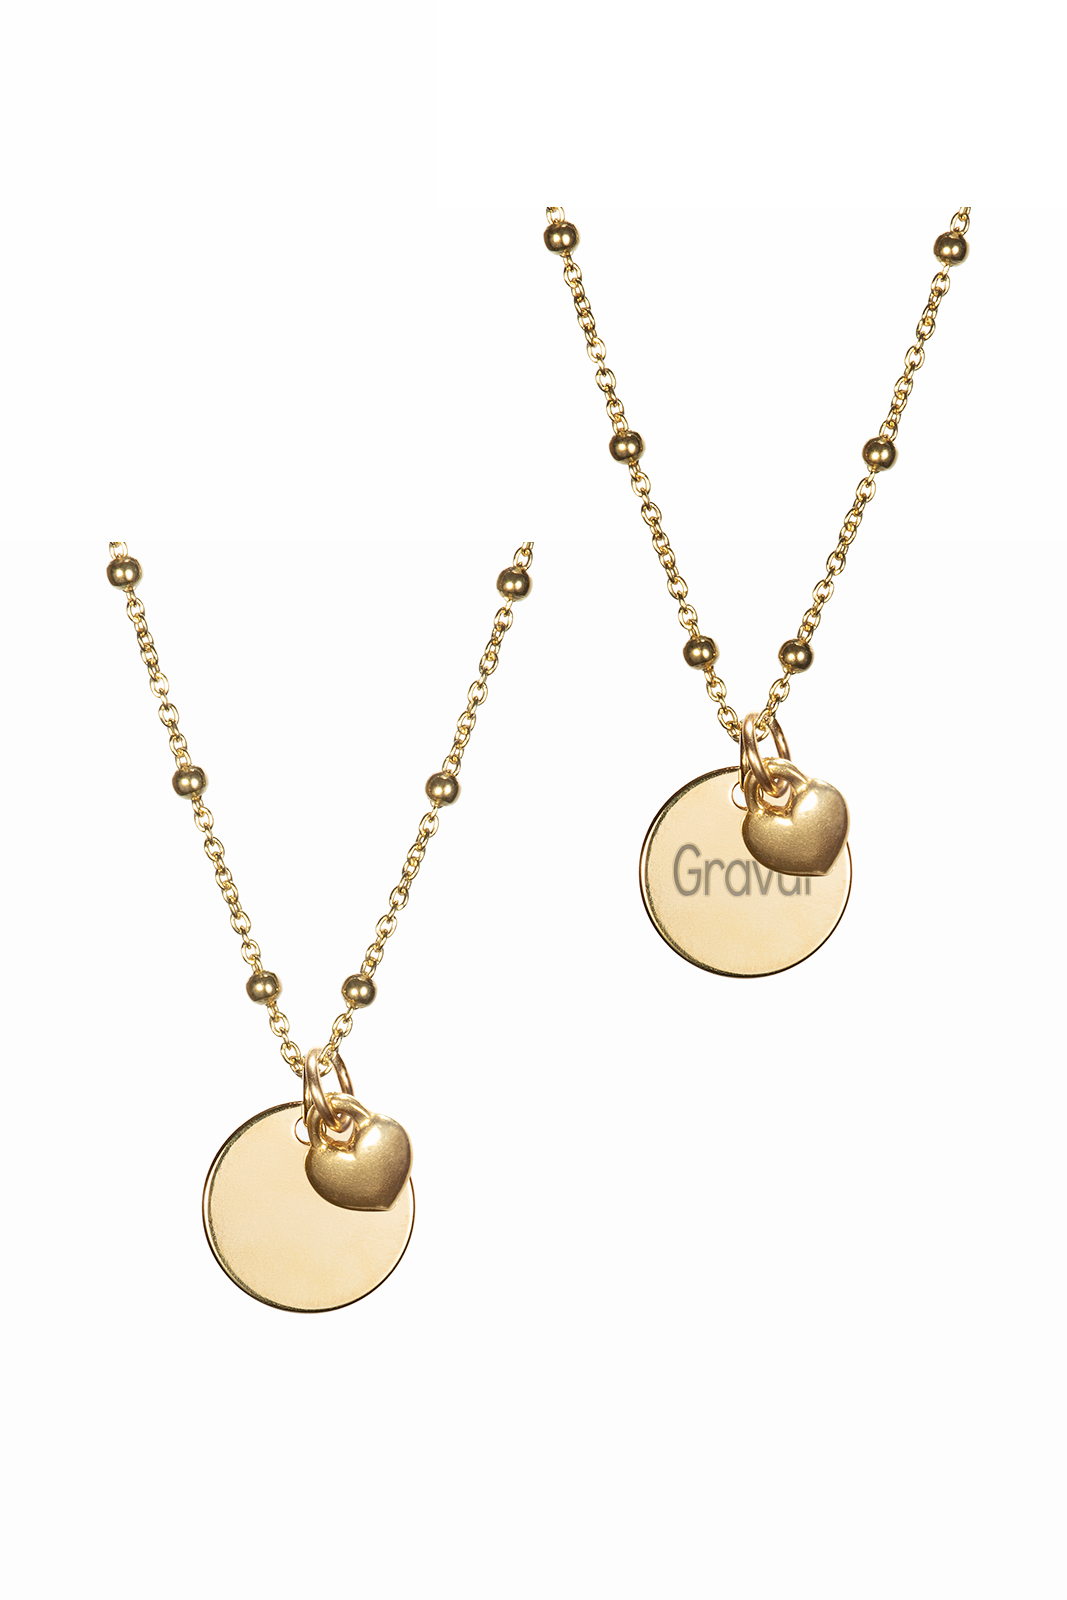 Halskette mit Gravur & Herzanhänger (Kugelkette) - Perlenbräute -  handgemachter Brautschmuck